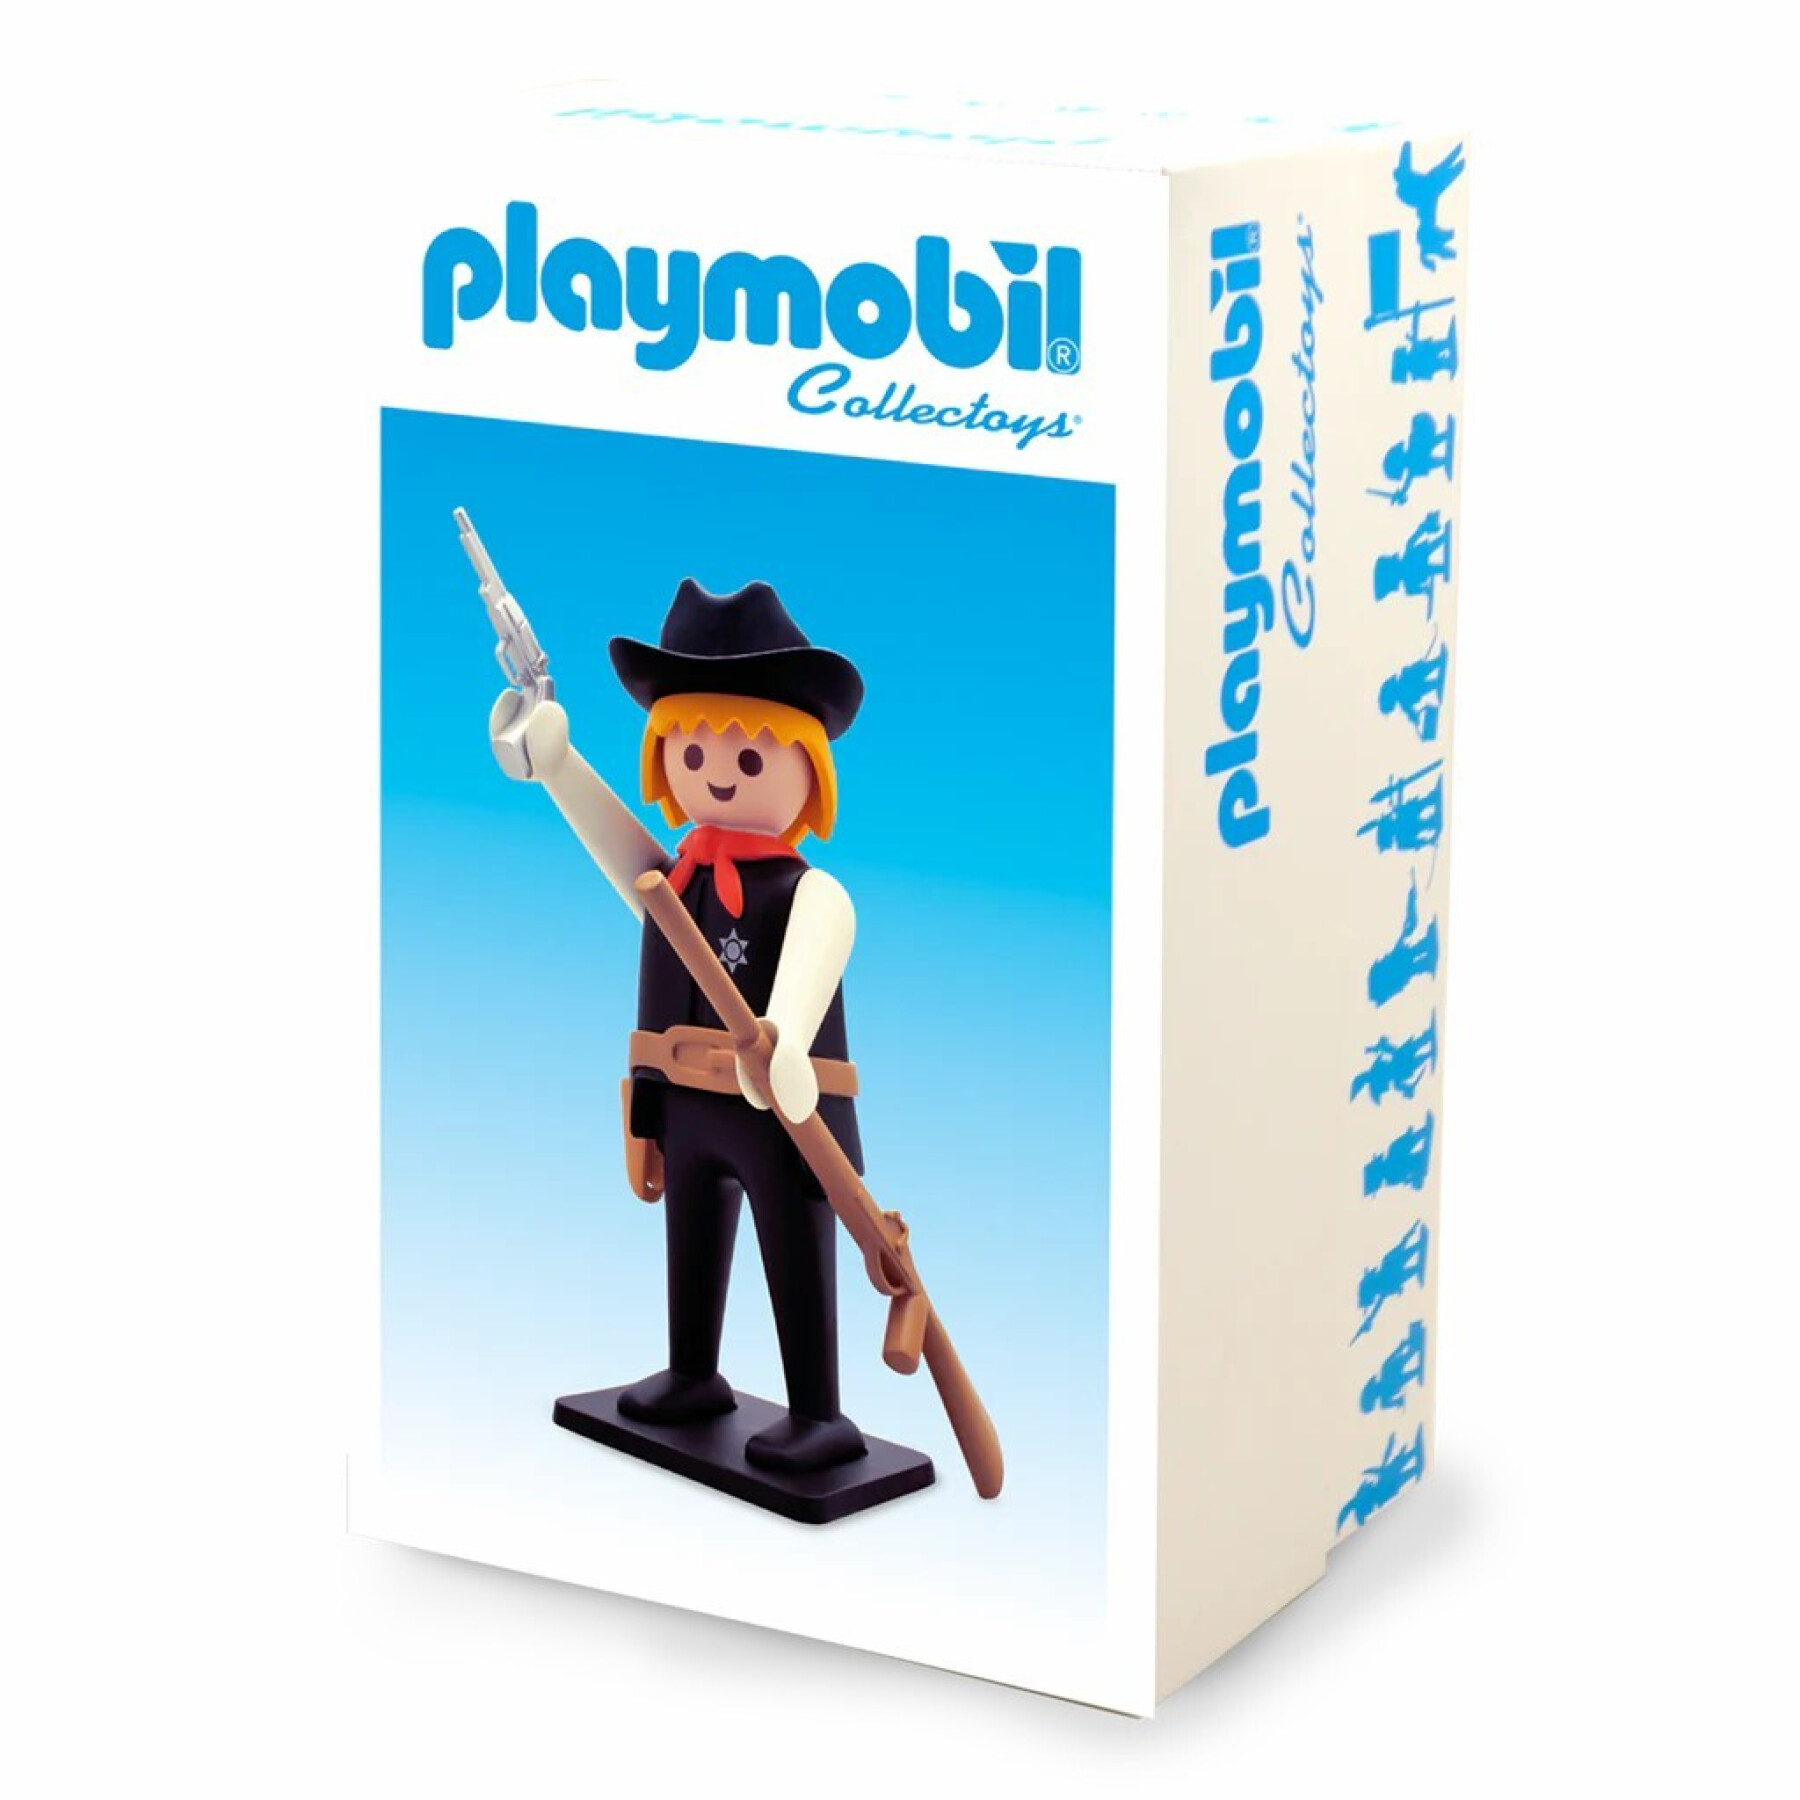 Estatuilla vintage de sheriff Plastoy Playmobil